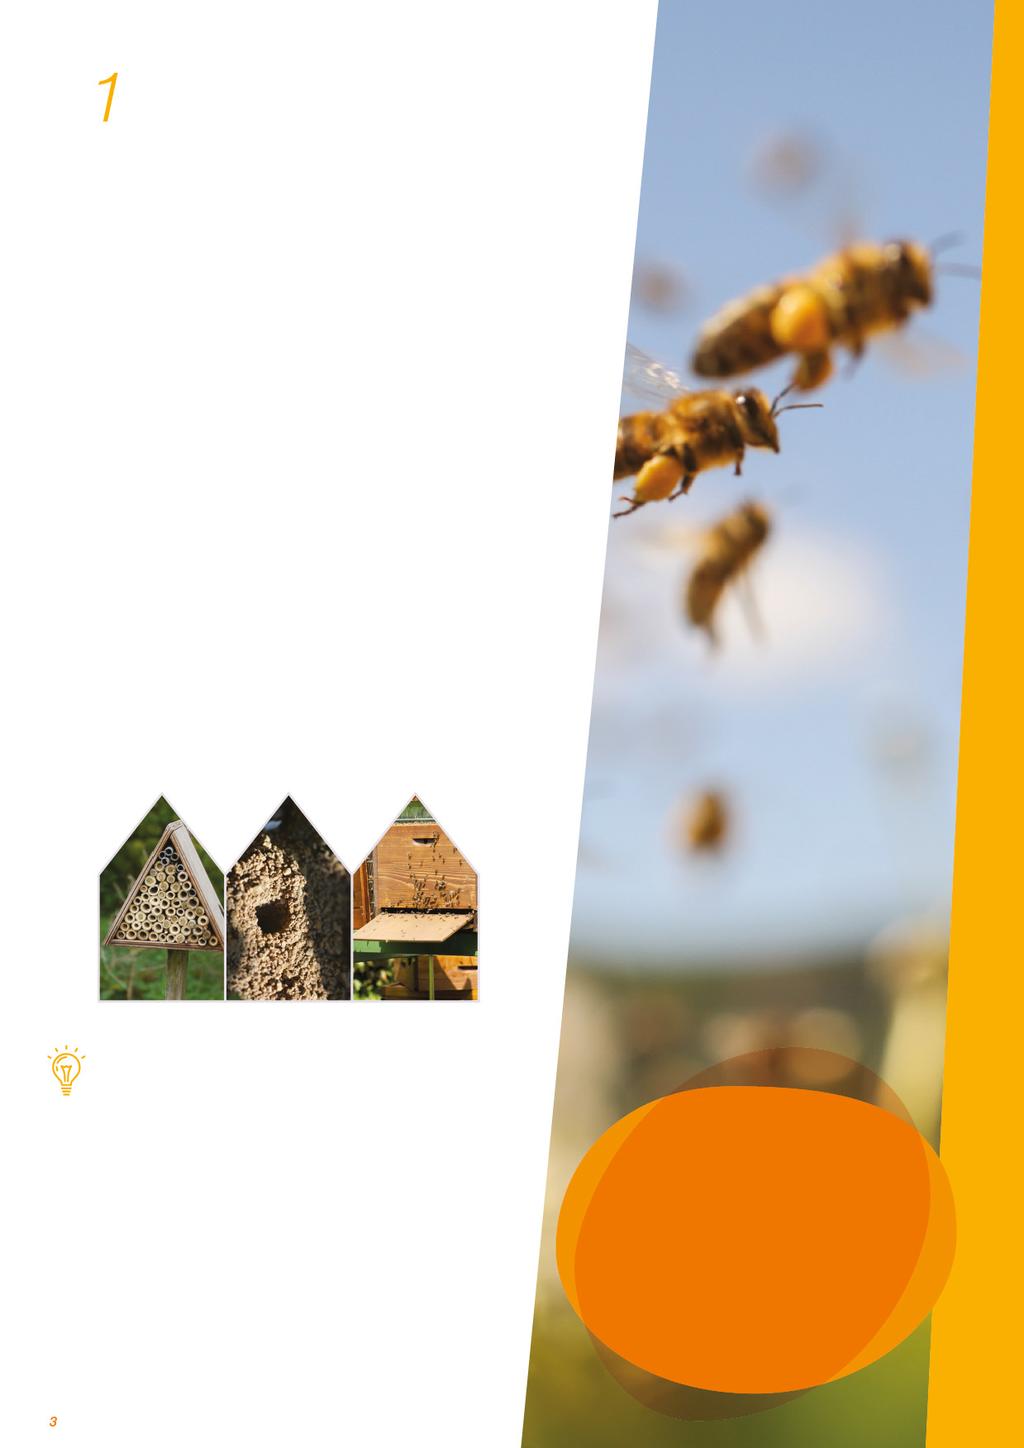 Egy nagy, rendkívül változatos család A nyugati mézelő méh (Apis mellifera) valószínűleg a legkedveltebb és legelterjedtebb méhfaj, még azokon a területeken is, ahol nem őshonos.